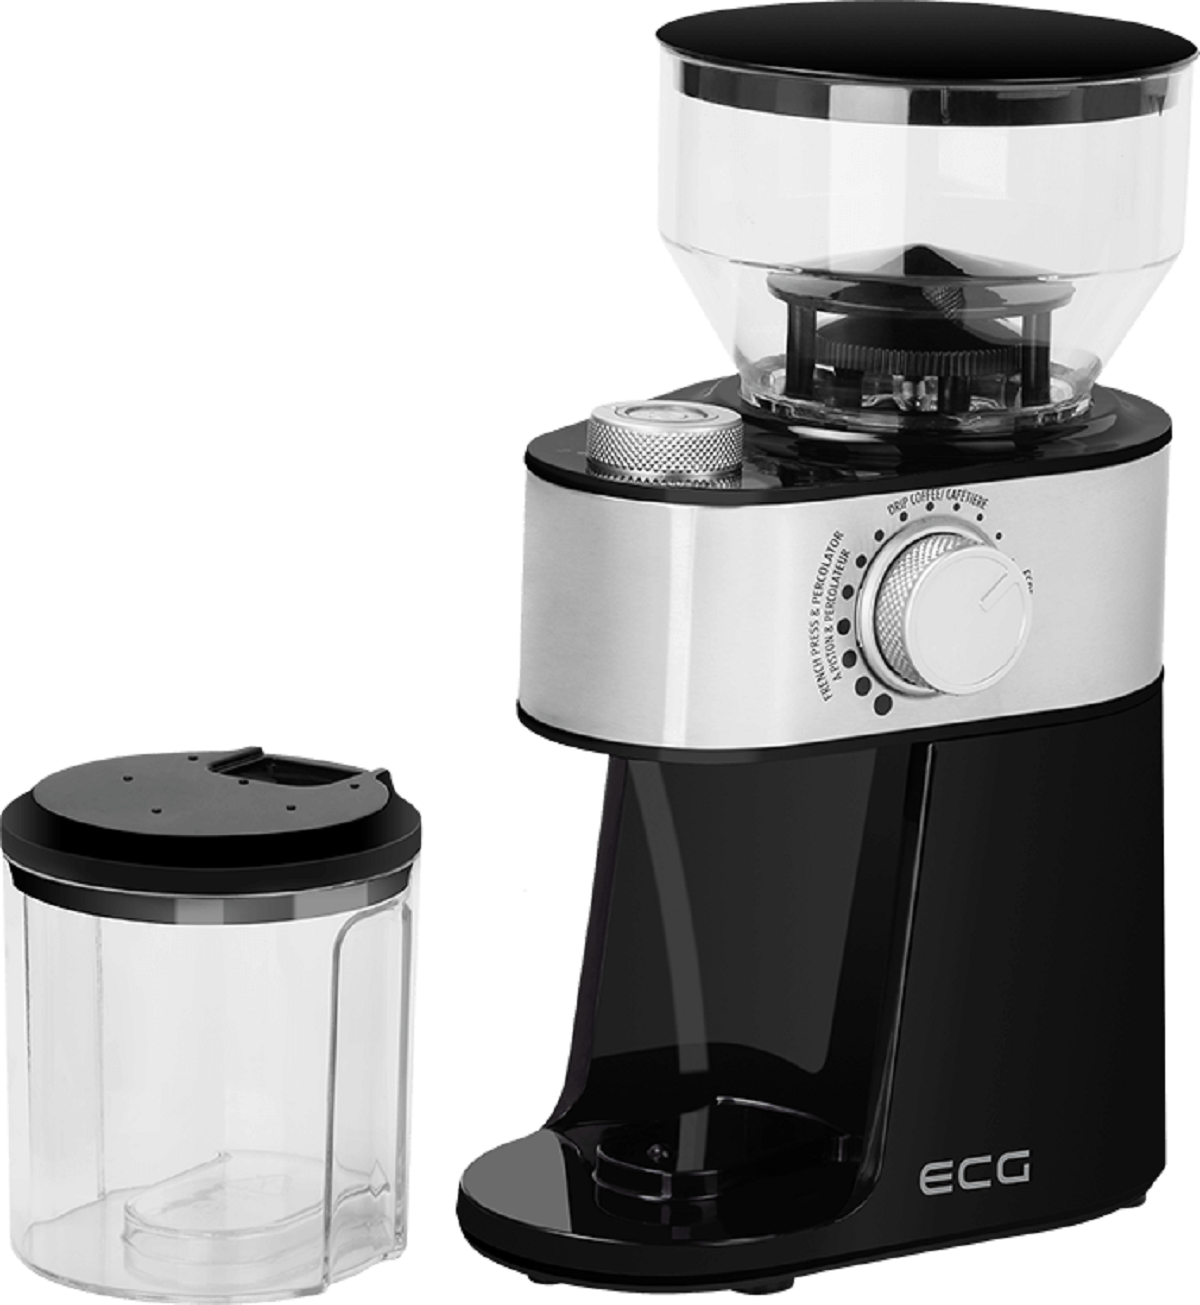 ECG KM 1412 Aromatico | Portionen Kaffee Elektrische Kaffeemühle | | 2-12 Scheibenmahlwerk | Kaffeemühle WEISS/SILBER